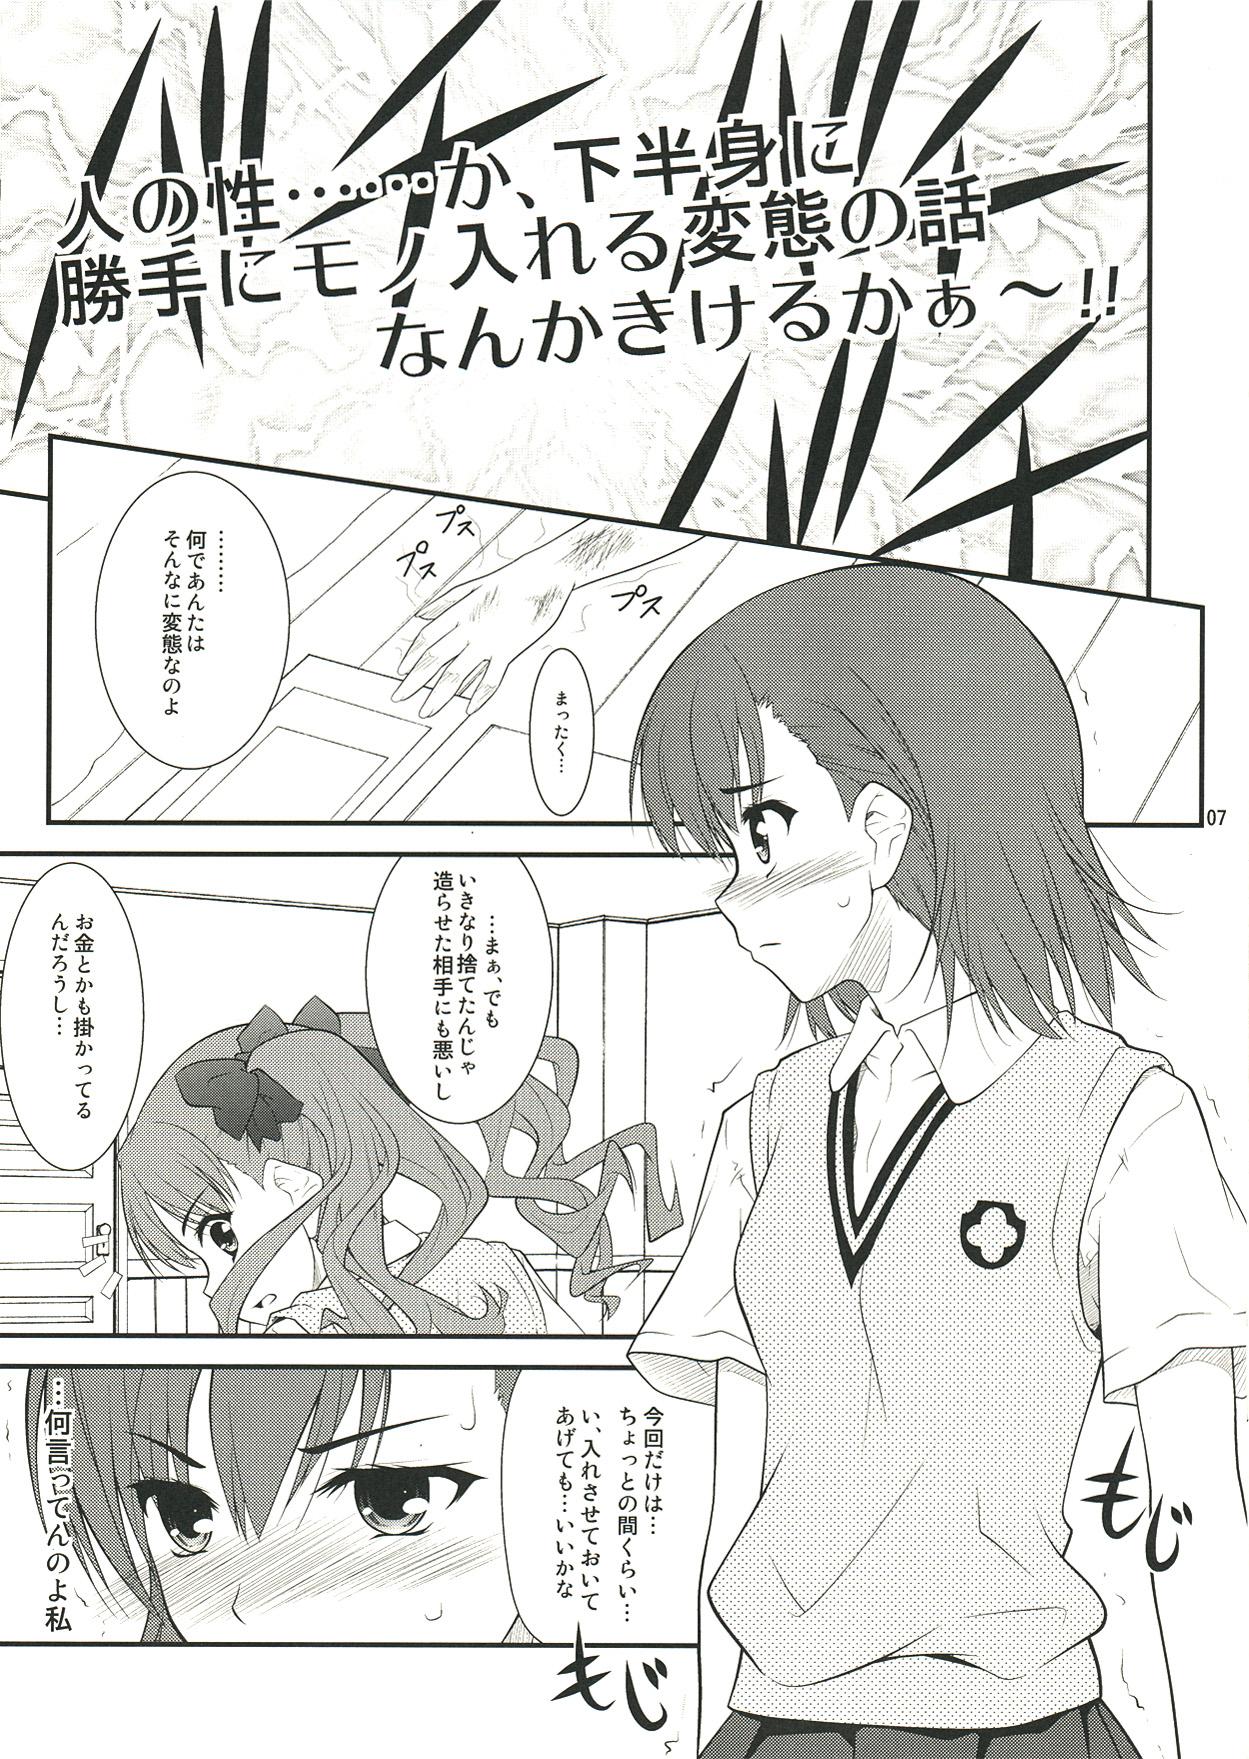 Missionary Position Porn Onee sama…Ku, Kuroko wa Kuroko wa Mou ! - Toaru kagaku no railgun Little - Page 7